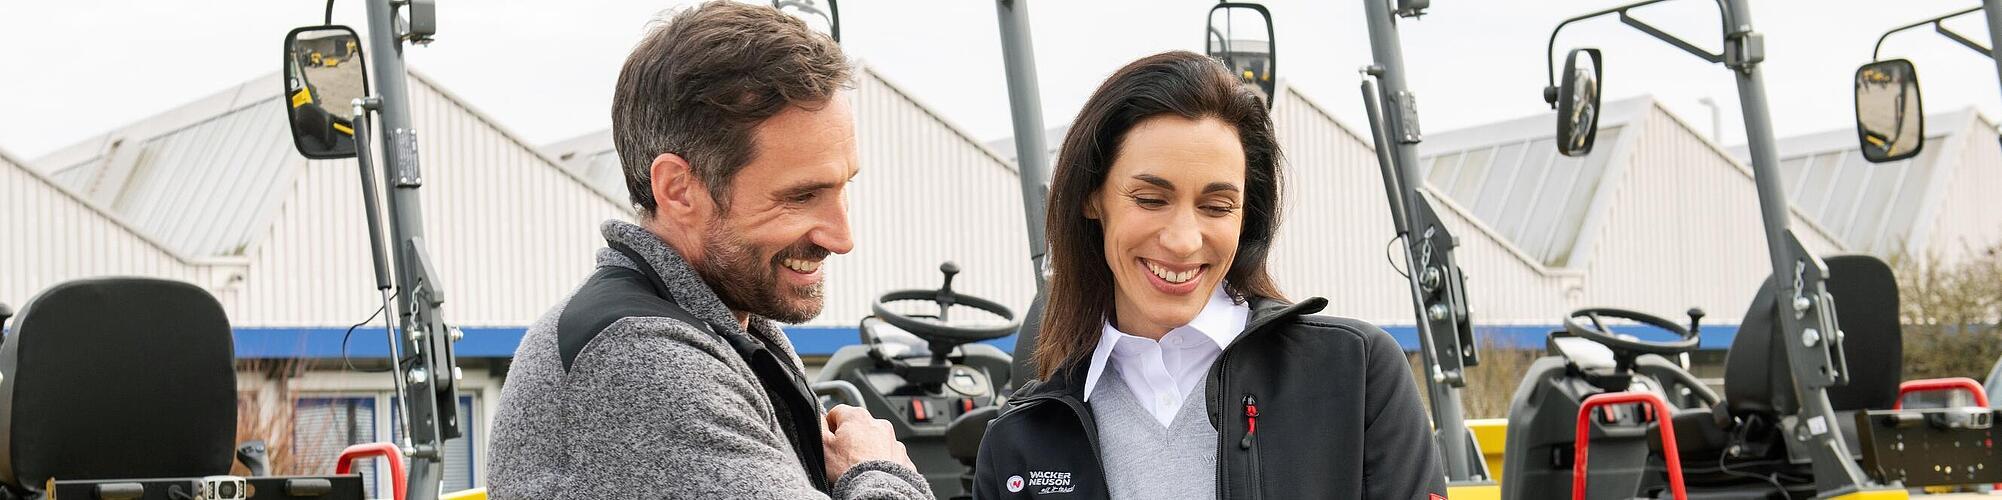 Улыбающаяся сотрудница компании Wacker Neuson с планшетом консультирует улыбающегося клиента перед строительными машинами Wacker Neuson.